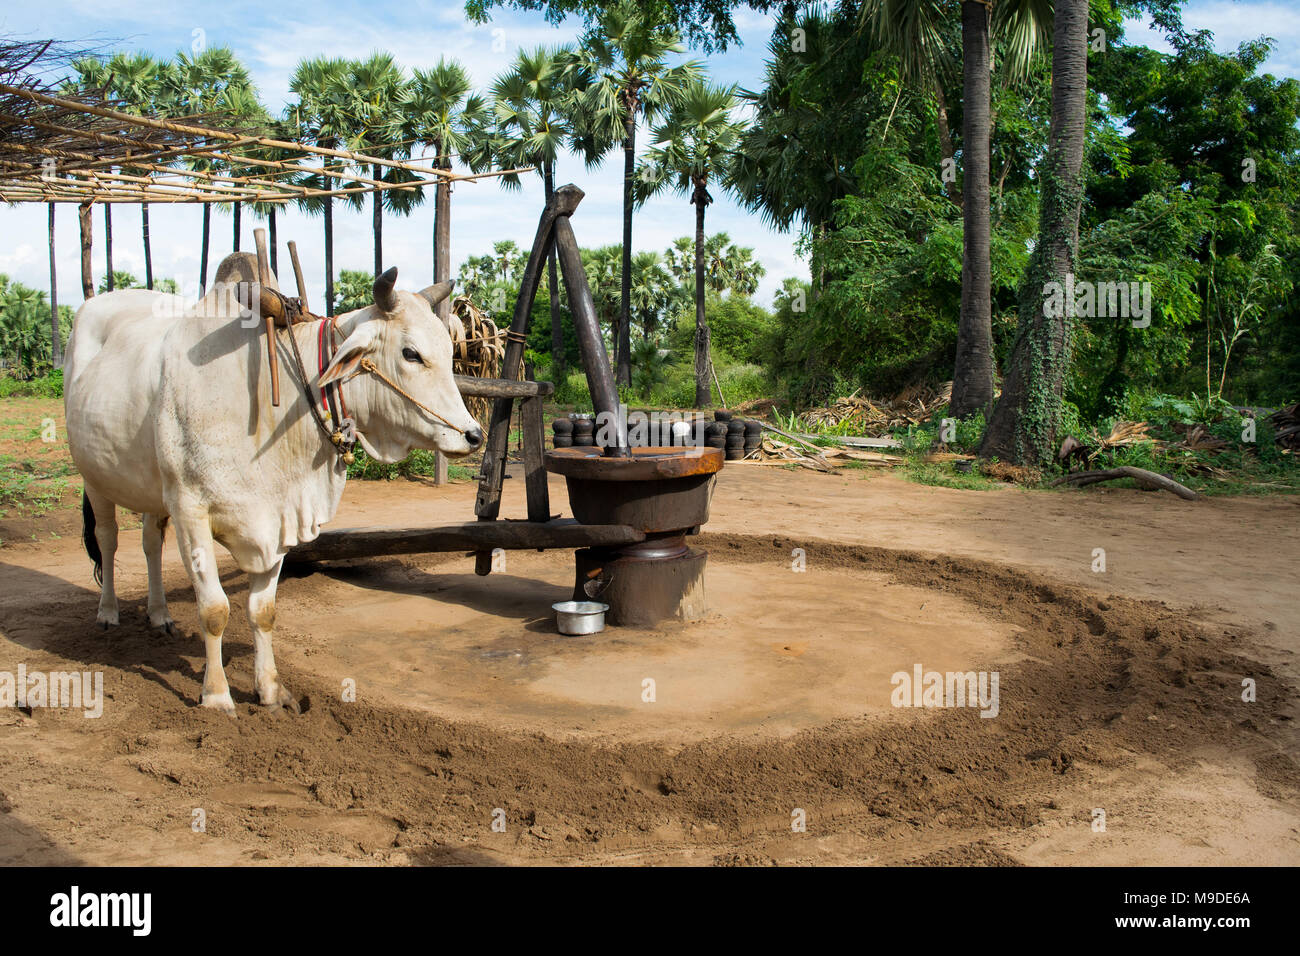 Maschio bianco ox tirando un mulino ad olio, utilizzati per macinare le arachidi la produzione di olio di arachide. Agricoltura birmano campi con palme andando in cerchi le vie Asia Foto Stock